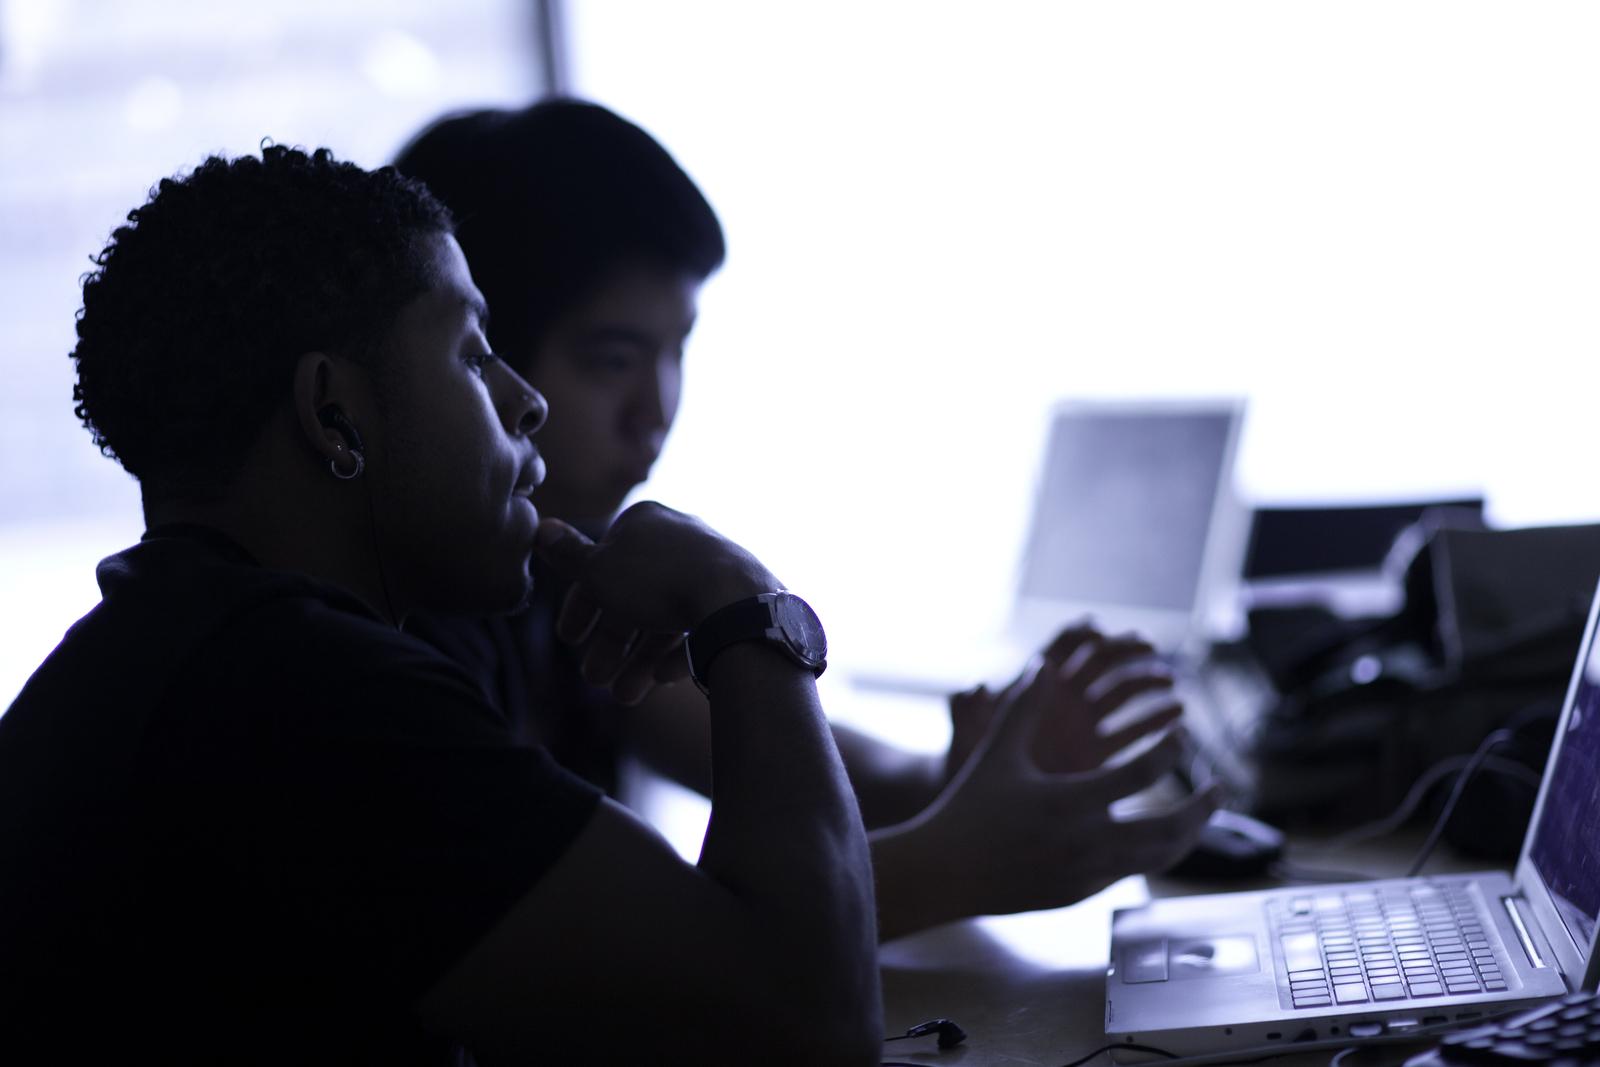 两个男大学生在笔记本电脑上打字. 他们的个人资料是可见的，但他们大多是背光的.